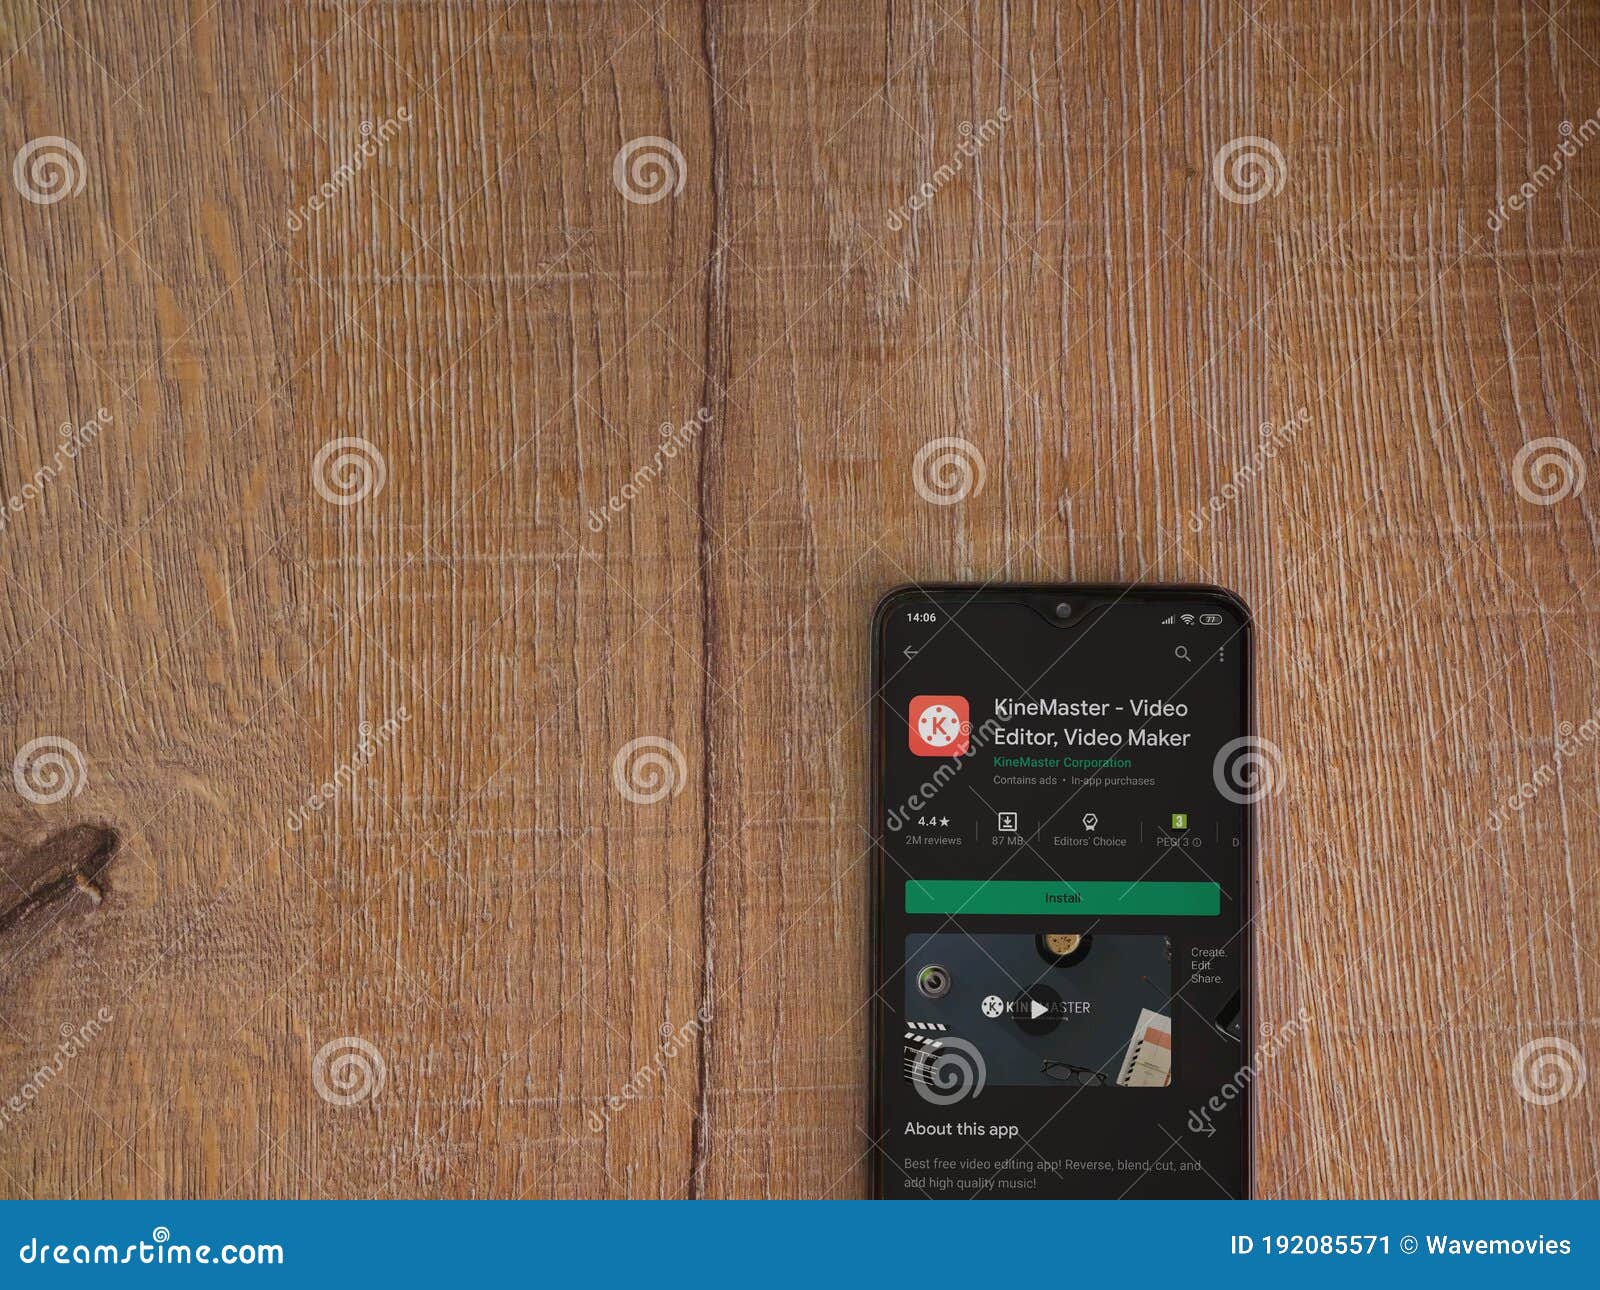 KineMaster là một trong những ứng dụng chỉnh sửa video di động hàng đầu trên thị trường hiện nay. Hãy xem hình ảnh để tìm hiểu thêm về cách sử dụng KineMaster và chỉnh sửa video trên điện thoại của bạn!